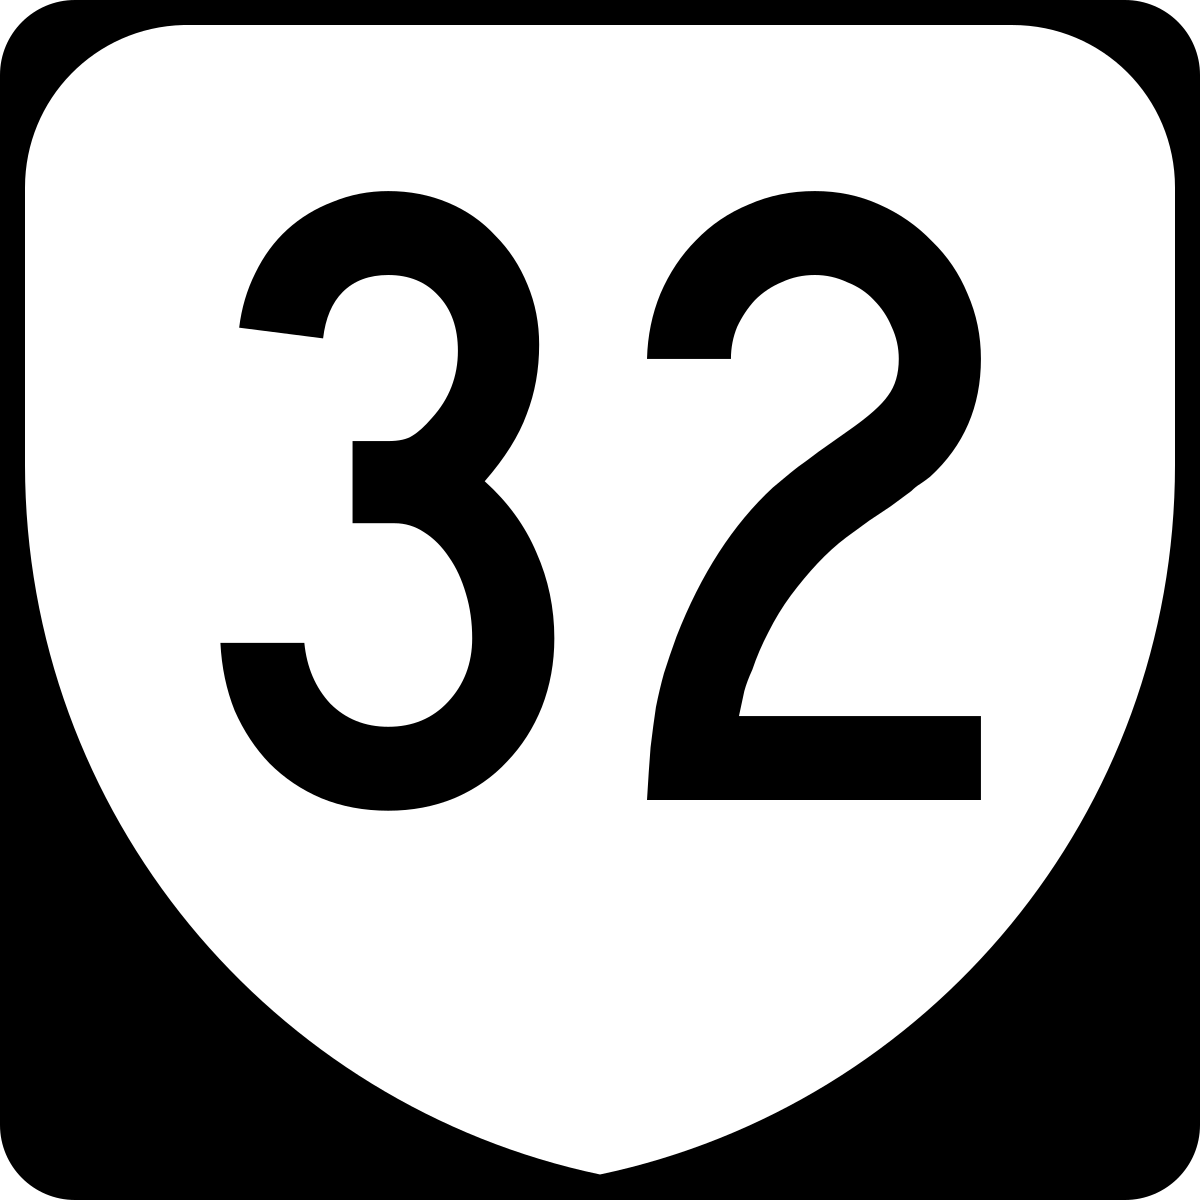 5 32 похожие. 32 (Число). 32 Route. 5 32 Википедия. 32 Number.